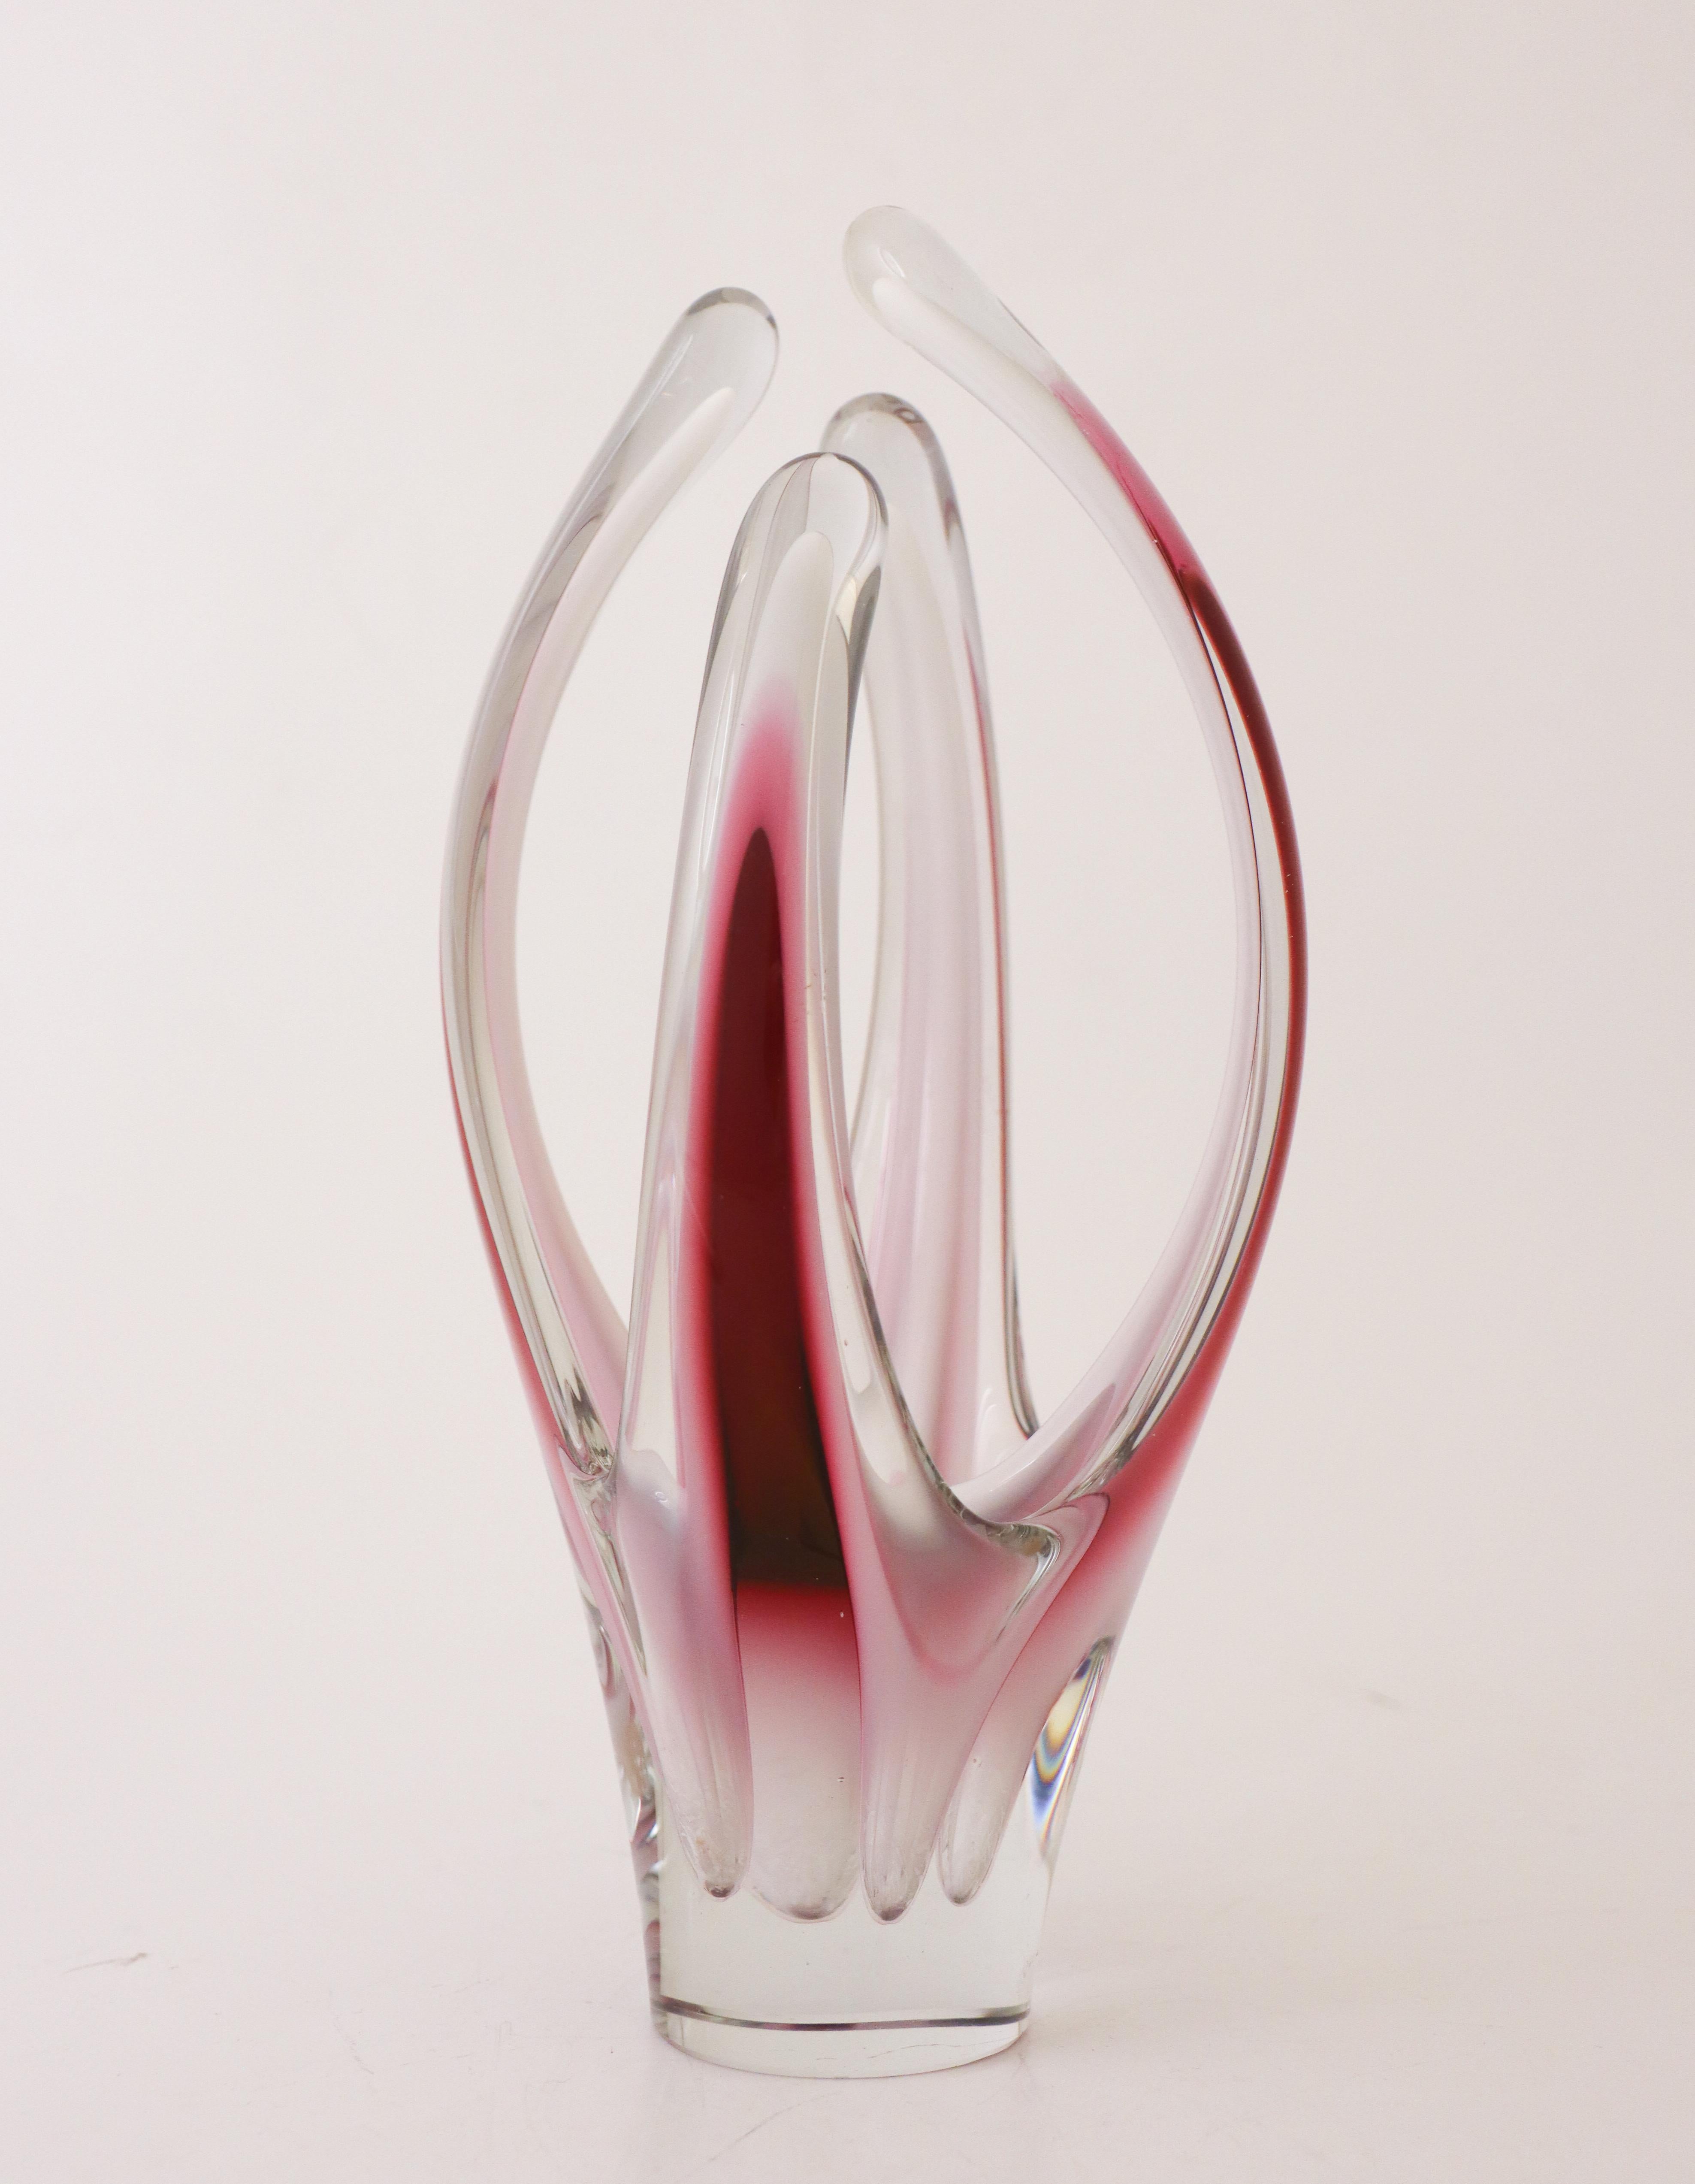 Une belle sculpture en verre rose / vase du modèle Coquille conçu par Paul Kedelv à la verrerie Flygsfors en Suède en 1960. Il mesure 27 cm de haut et est en excellent état, à l'exception de quelques légères éraflures ci-dessous. Il est signé et